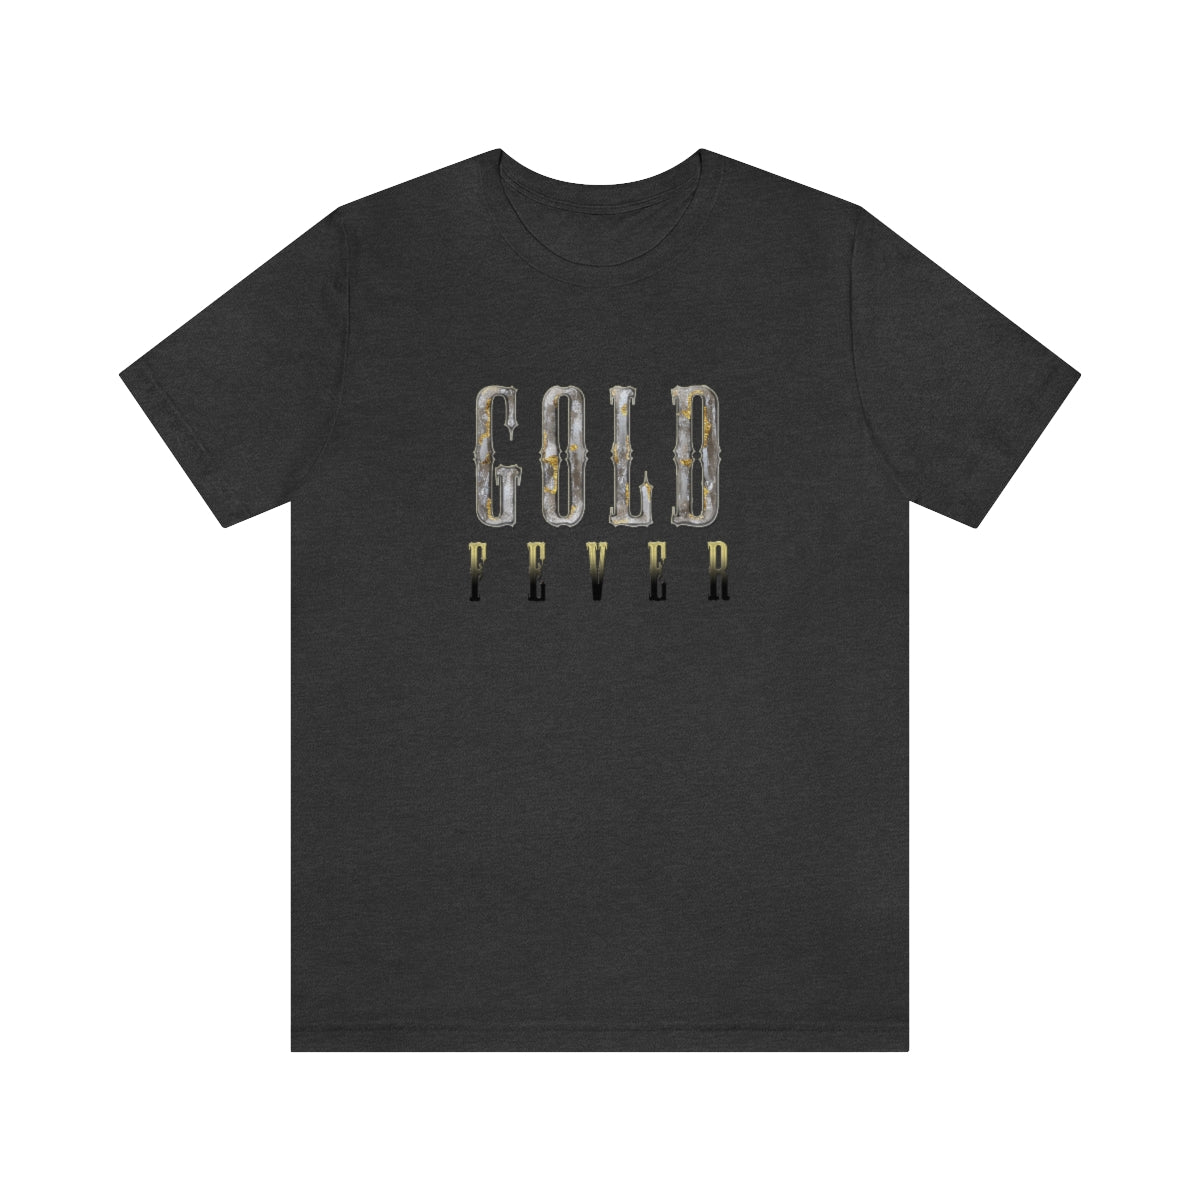 The OG Gold Fever T-Shirt